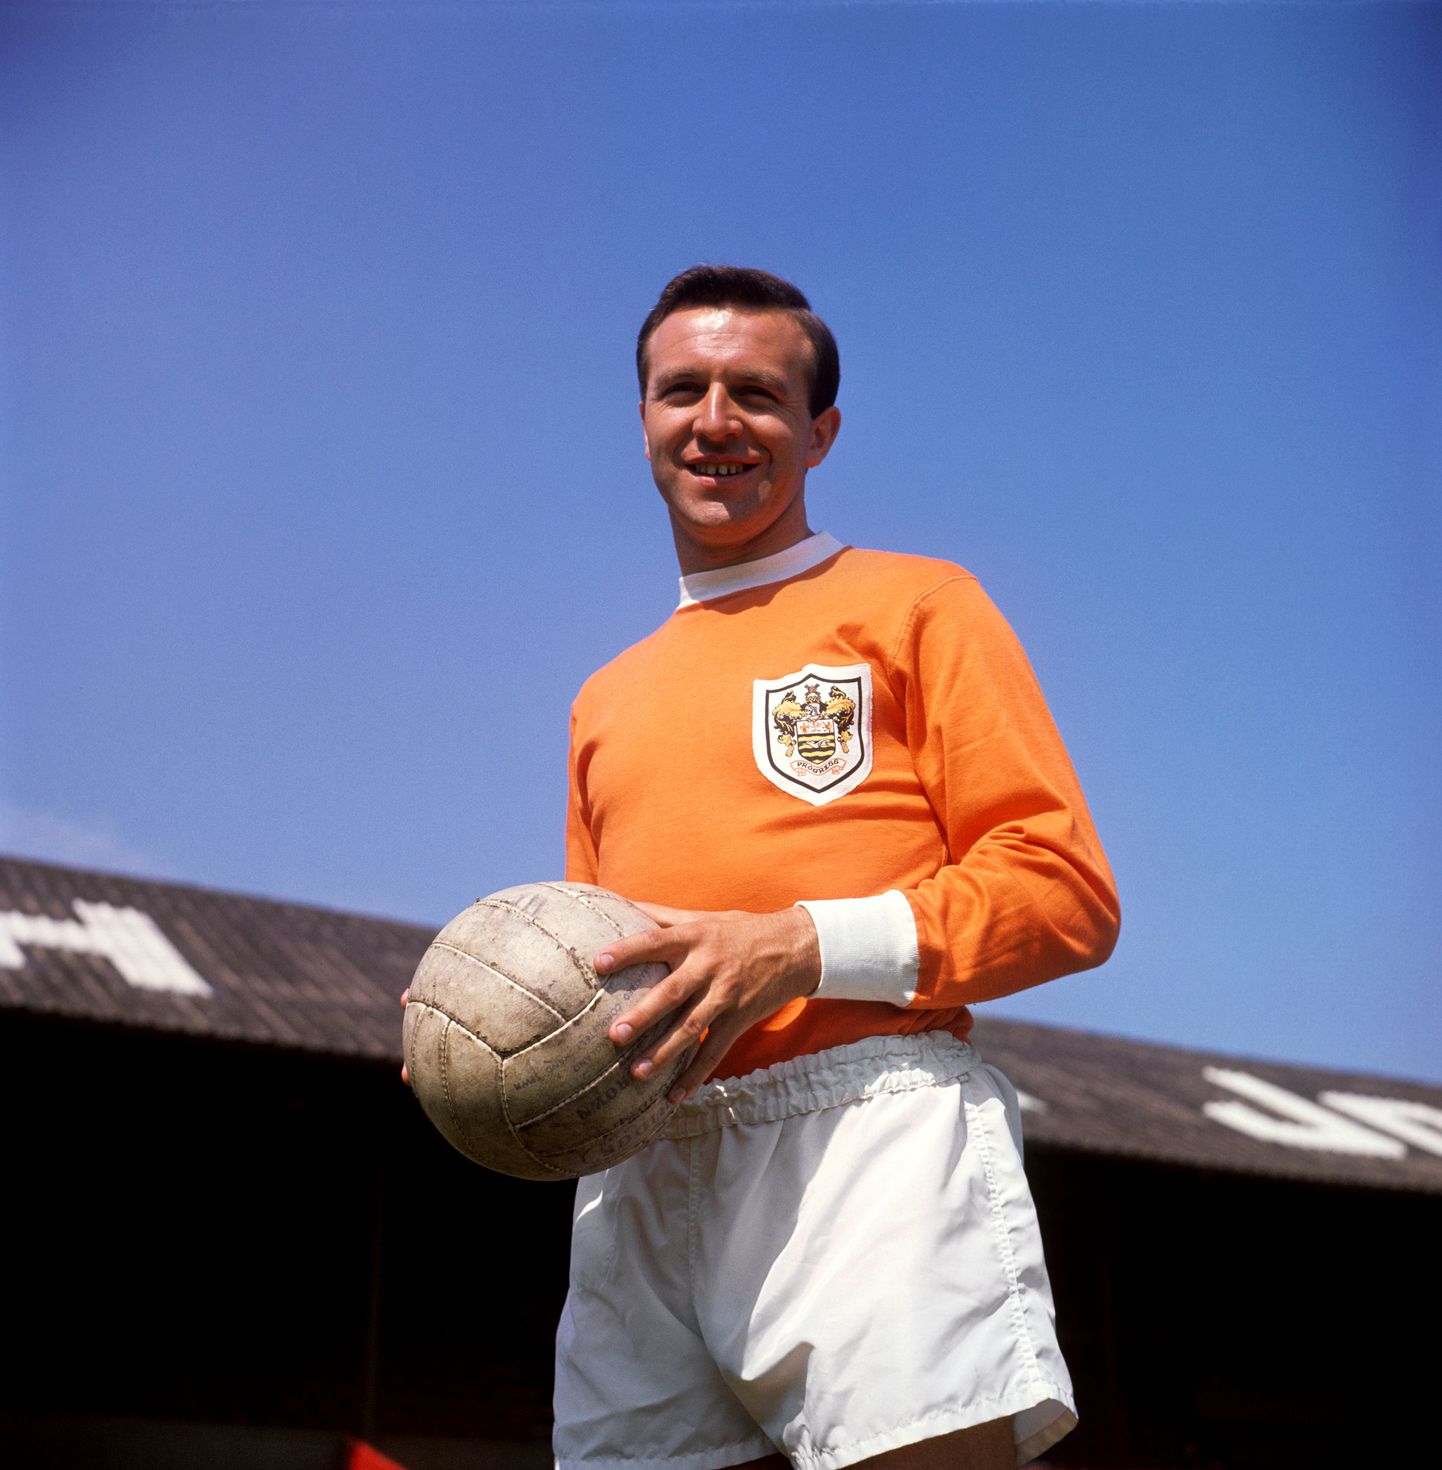 Jimmy Armfield, Blackpooli klubi legend ja Inglismaa koondise pikaaegne kapten, suri 82-aastaselt.